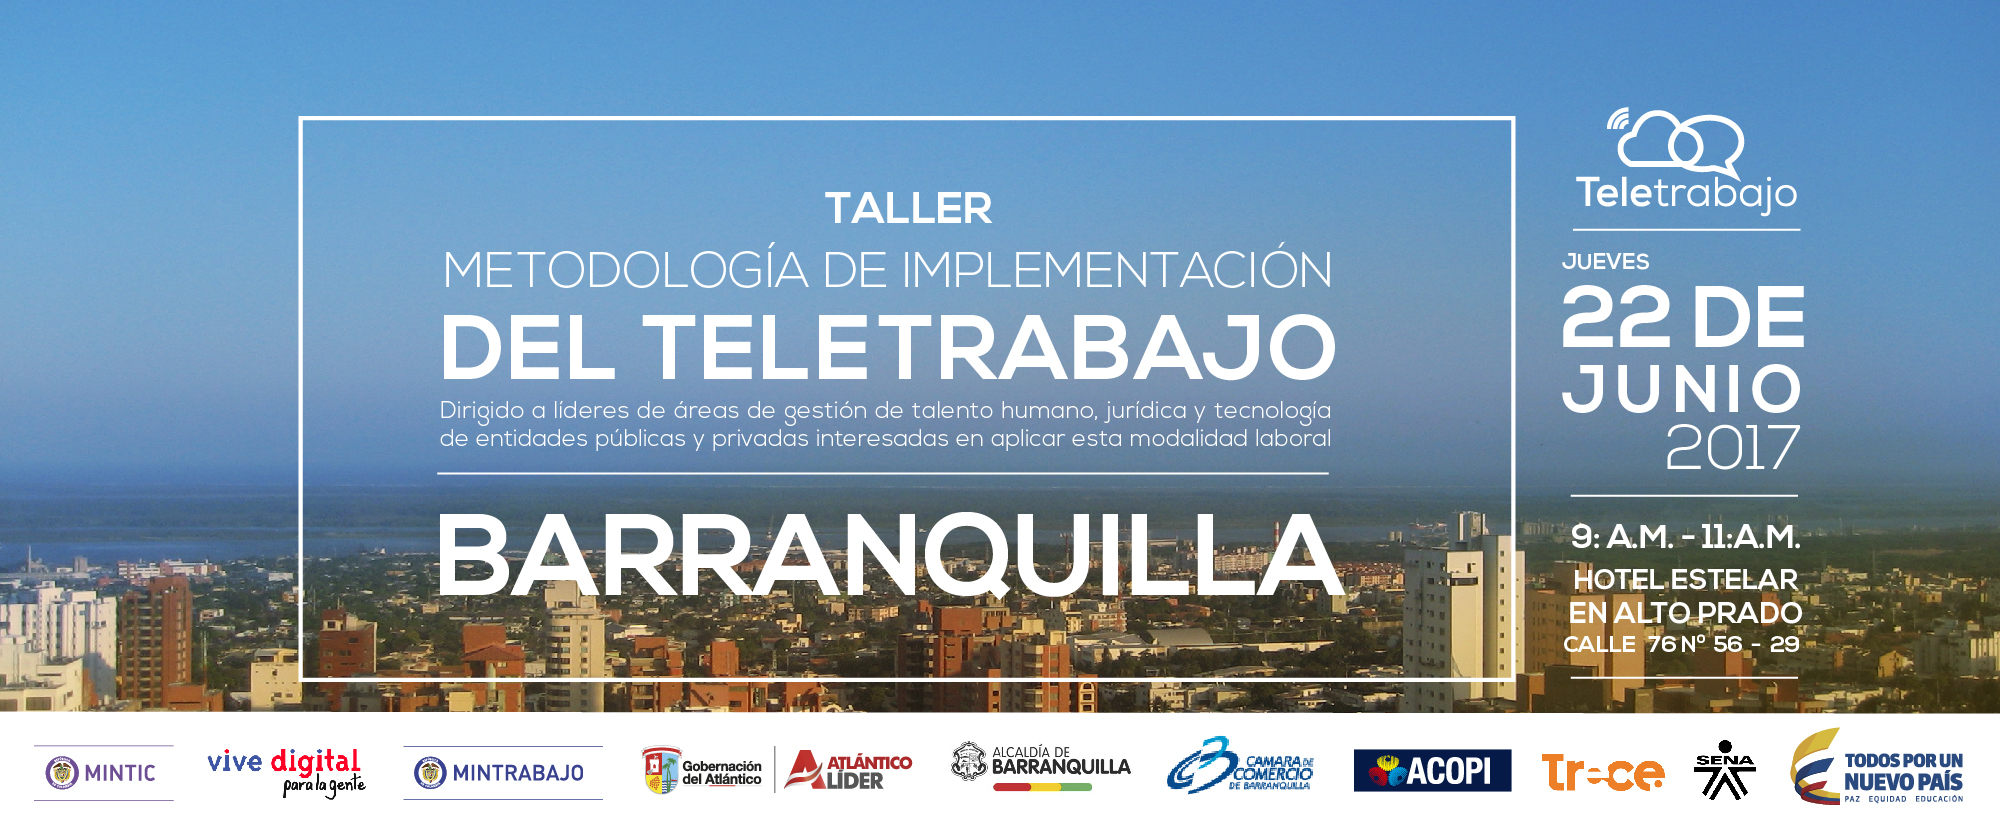 Empresarios de Barranquilla invitados al Taller sobre implementación del Teletrabajo